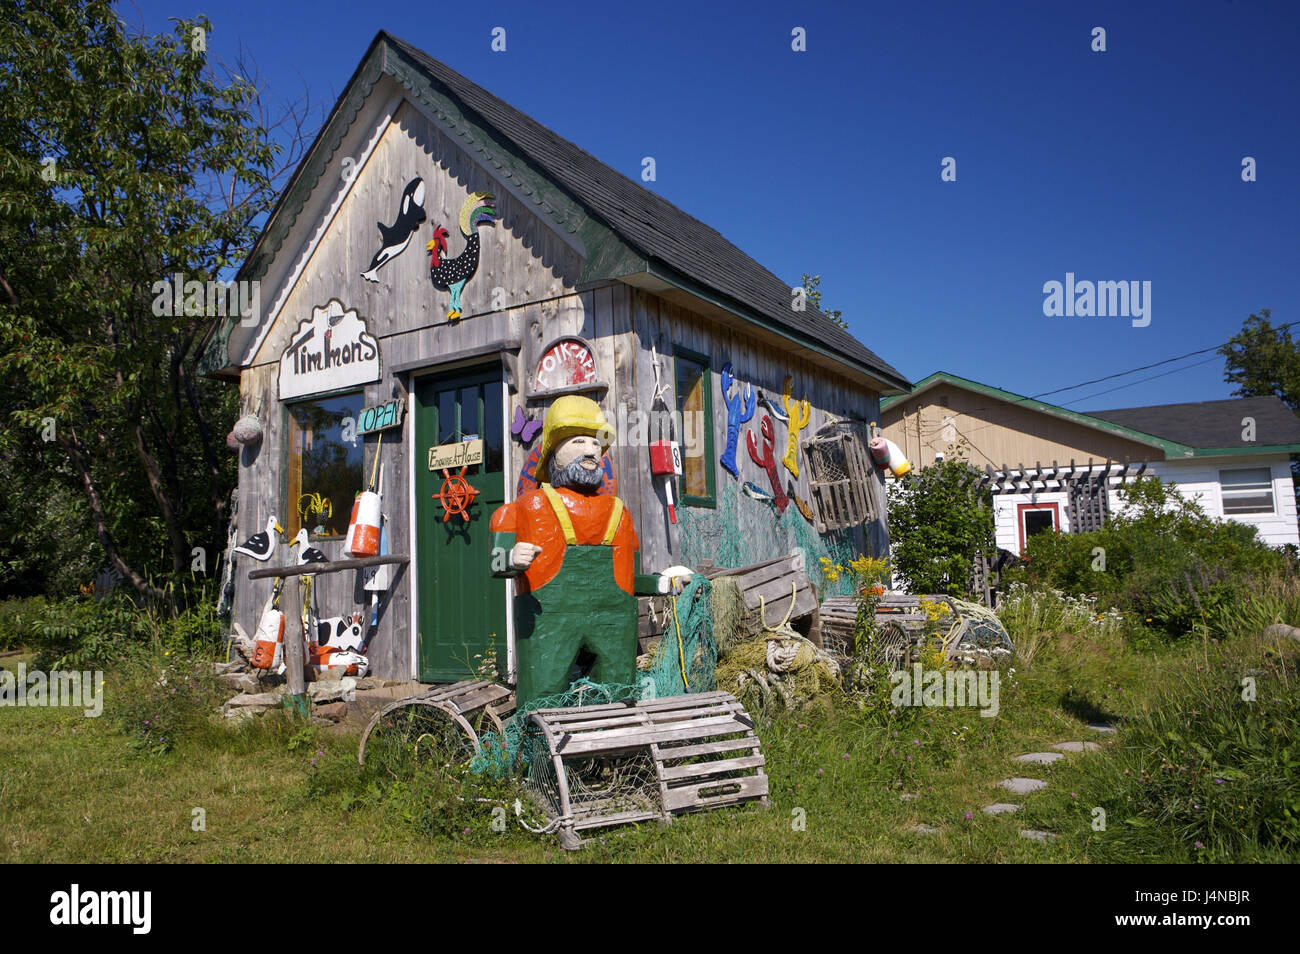 Summer house, decorazione, Timmon's folk tipo di tendina, piacevole Bay, Cabot Trail, Cape Breton, Nova Scotia, Canada, Foto Stock